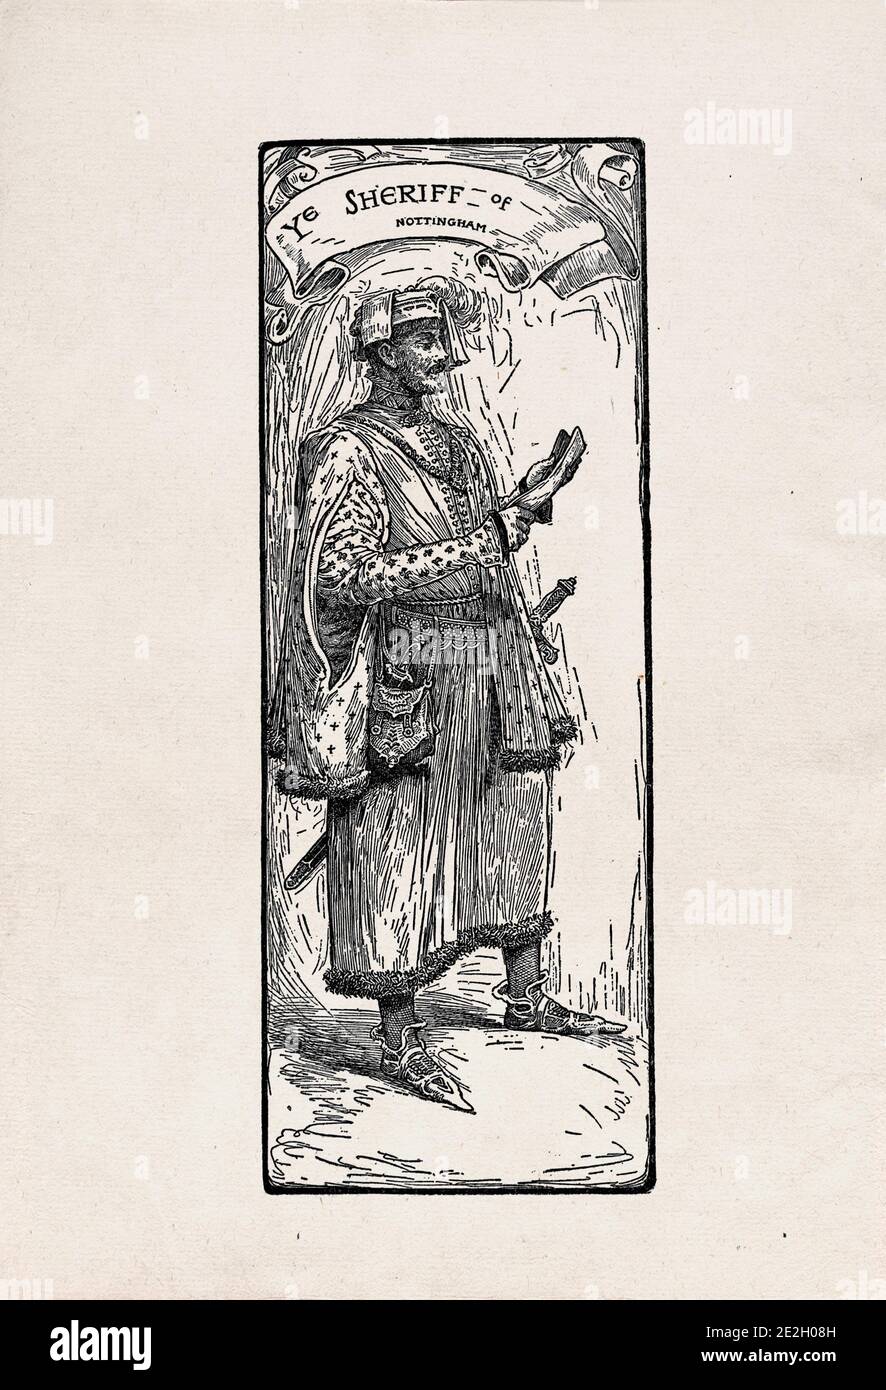 Gravure antique de personnages littéraires du folklore anglais des légendes Robin des Bois. Shérif de Nottingham. Par Louis Rhead. 1912 Banque D'Images